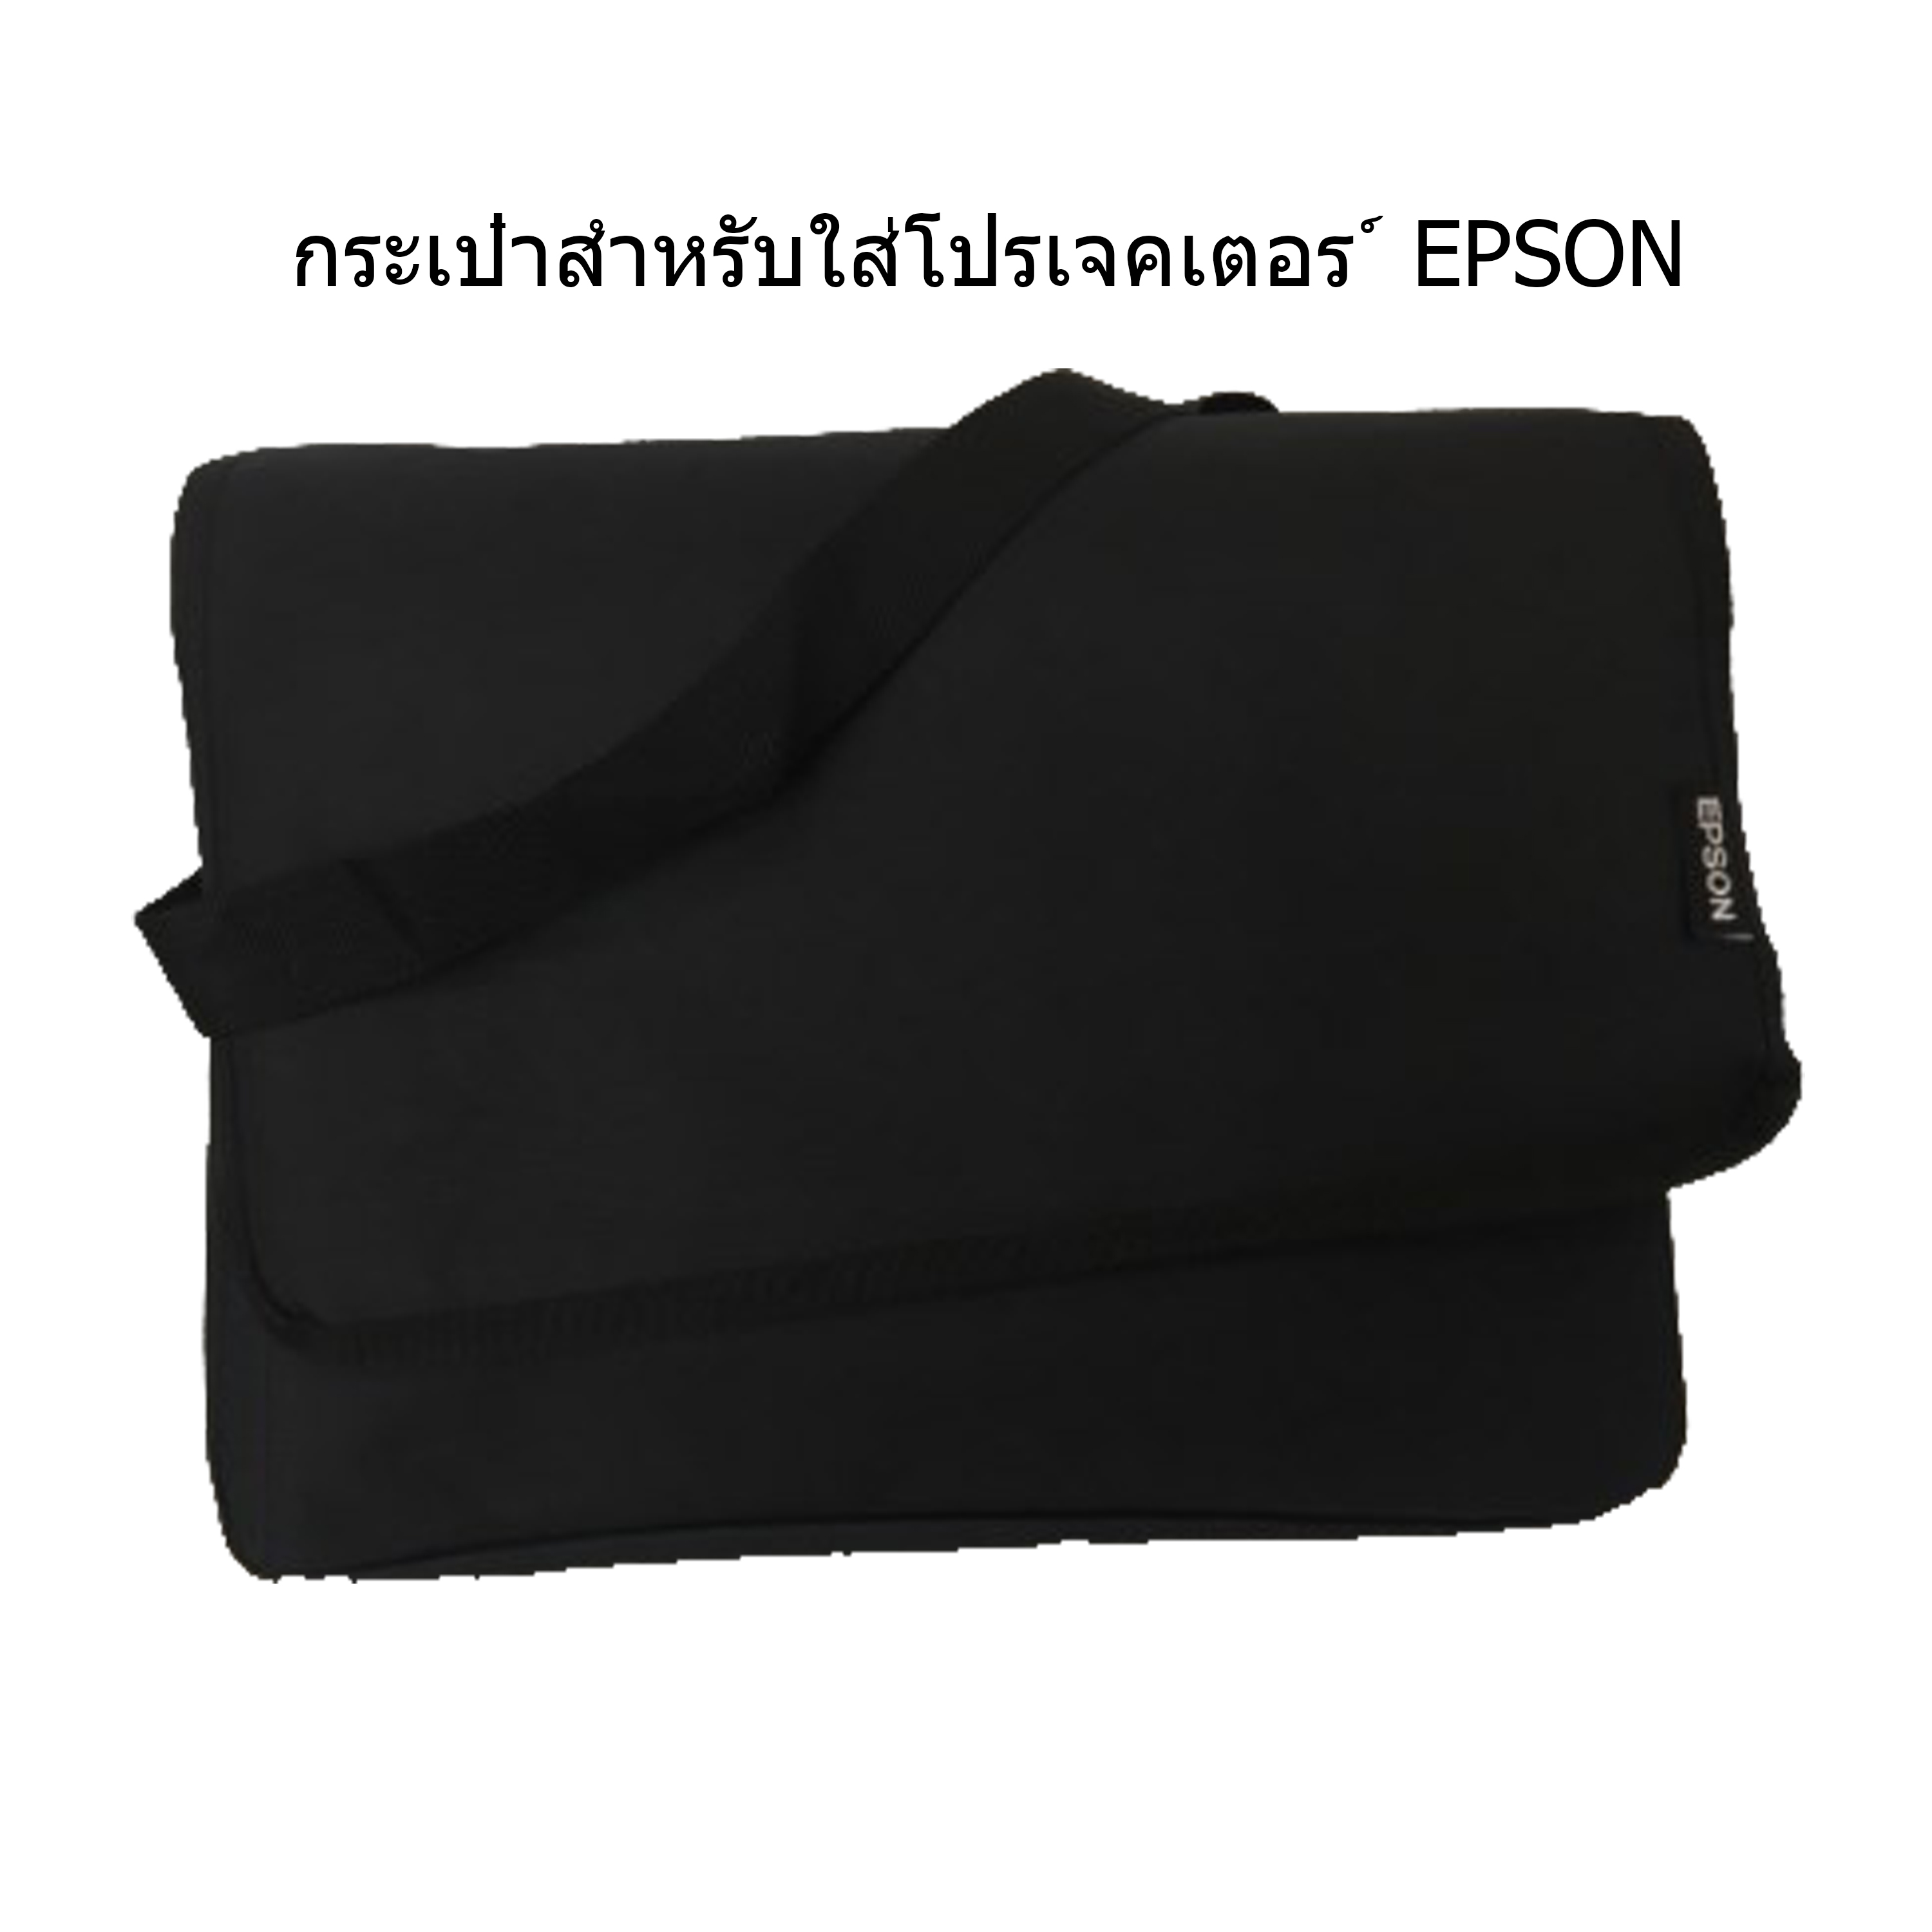 กระเป๋าสำหรับโปรเจคเตอร์ EPSON ขนาด 37 x 30 x 13 เซนติเมตร